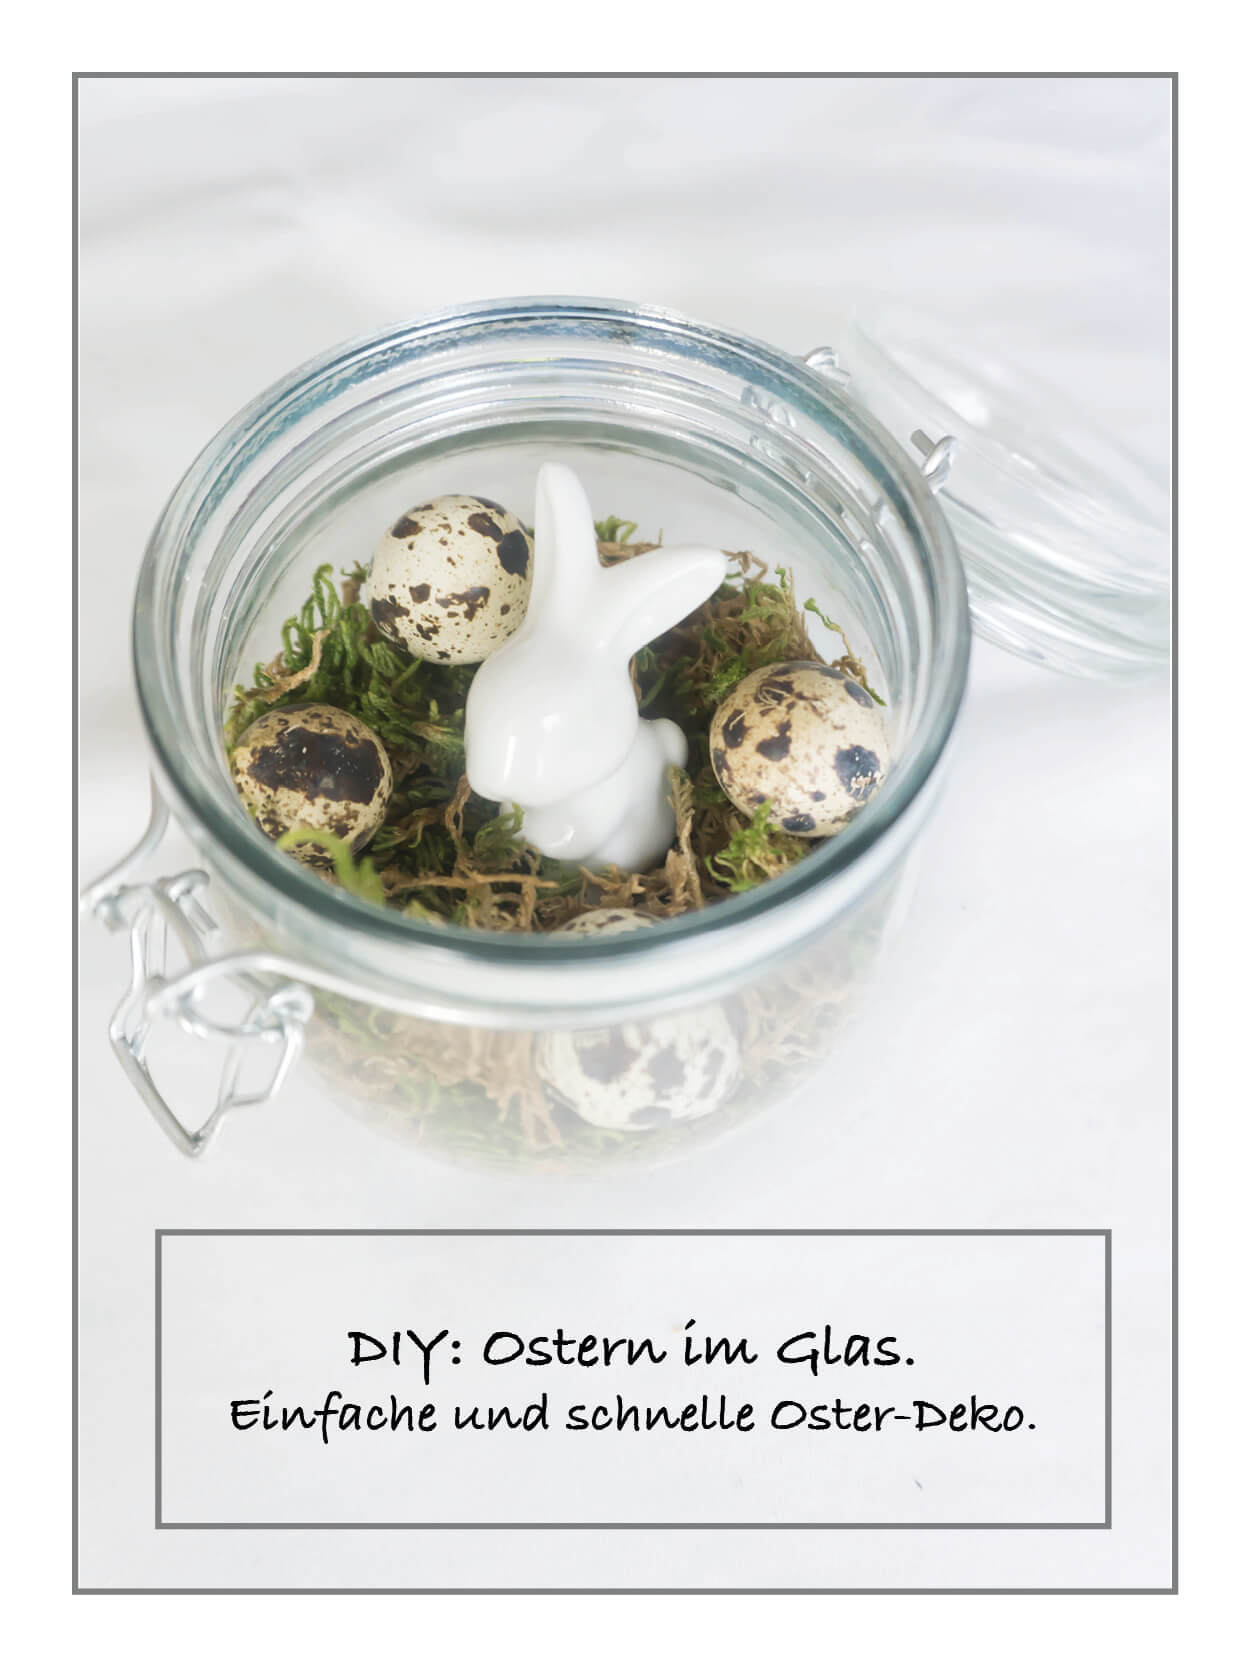 DIY: Ostern im Glas. Einfache und schnelle Oster-Deko.